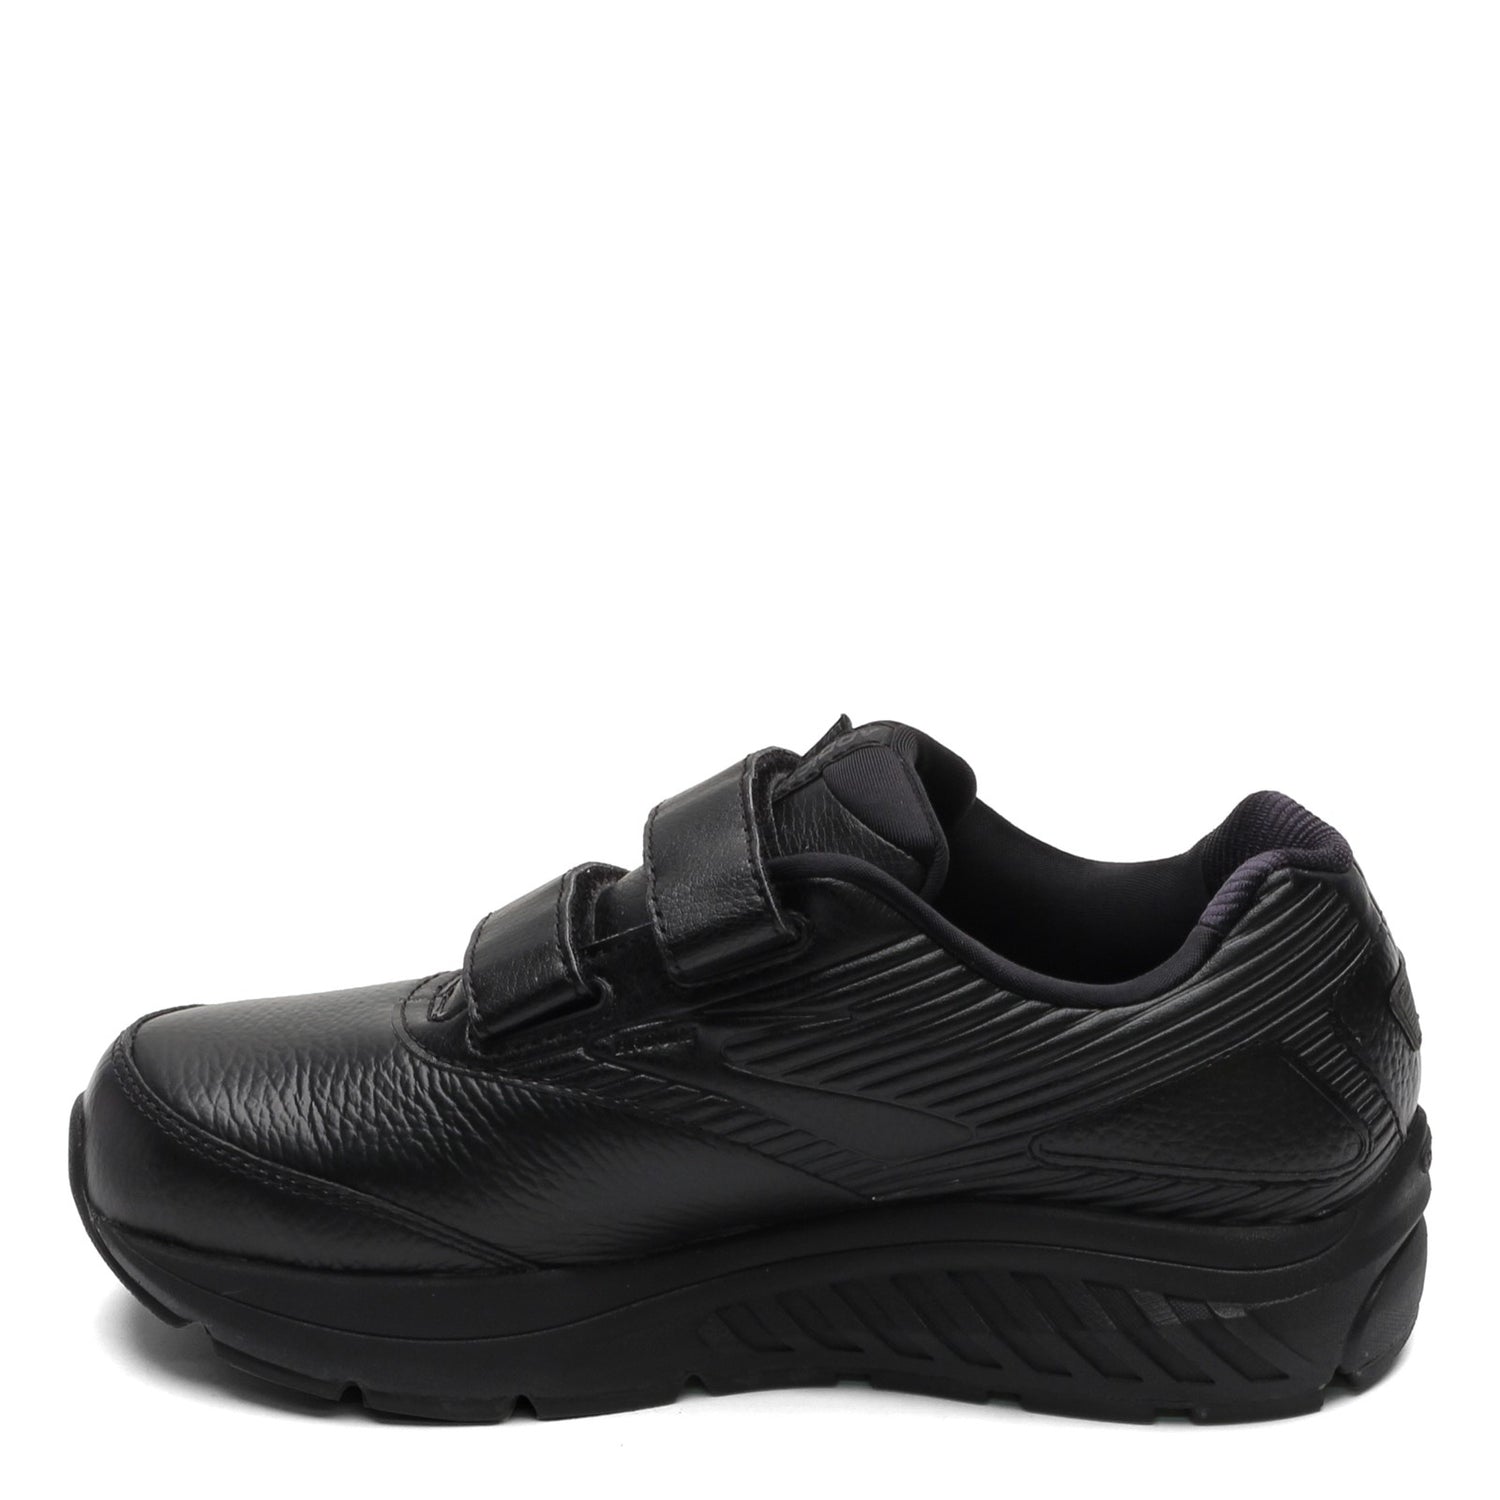 Peltz Shoes  Women's Brooks Addiction Walker V-Strap 2 Walking Shoe - Wide Width Black 120309 1D 072